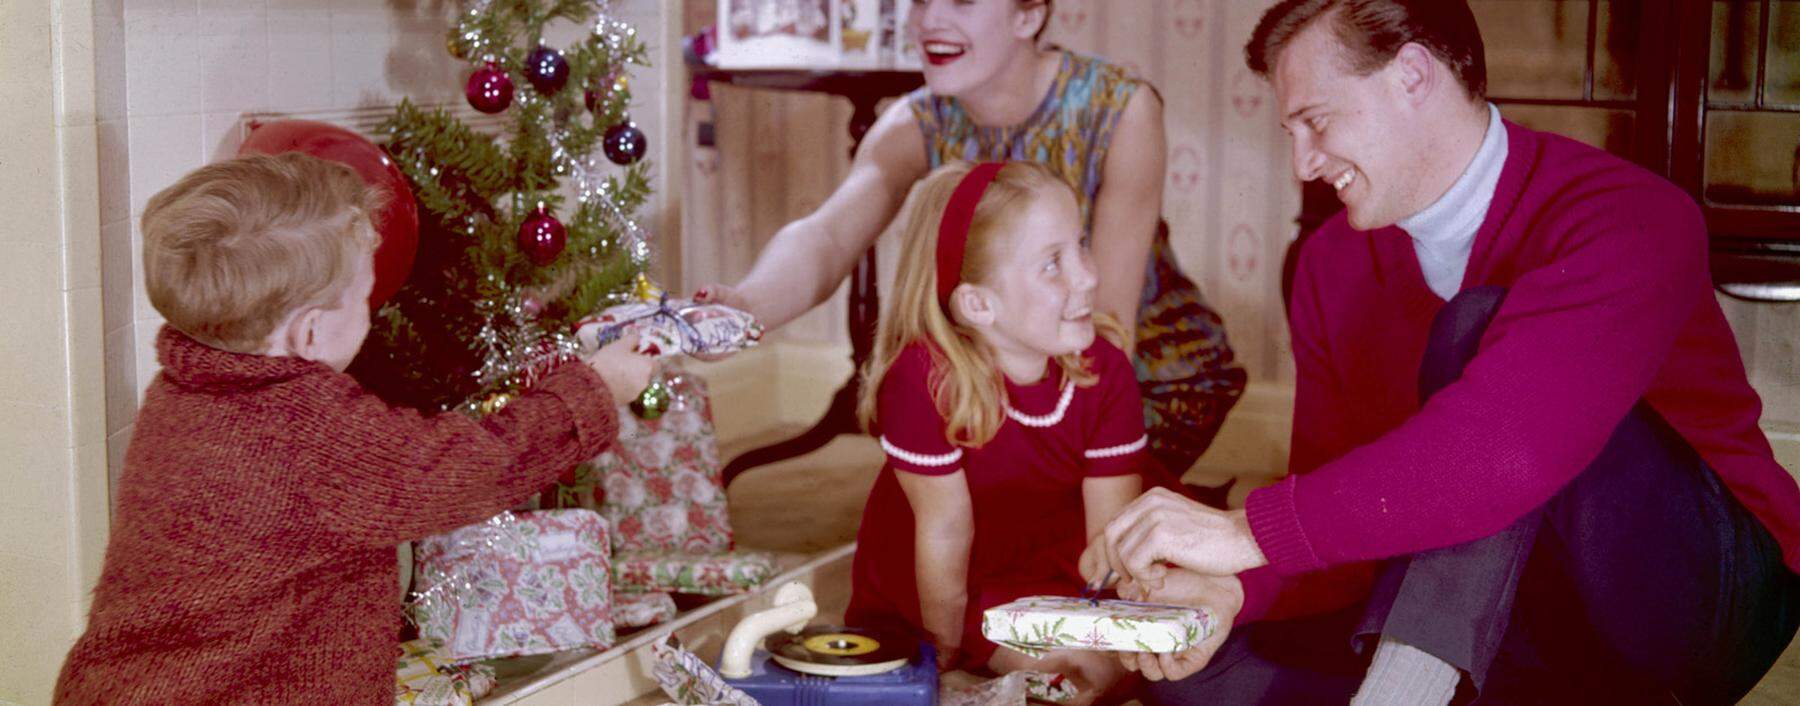 Trautes Heim, Weihnachten nicht allein: Keine 200 Jahre alt ist das Bild von Weihnachten als idyllisches Familienfest – das bis heute in den Köpfen sitzt.